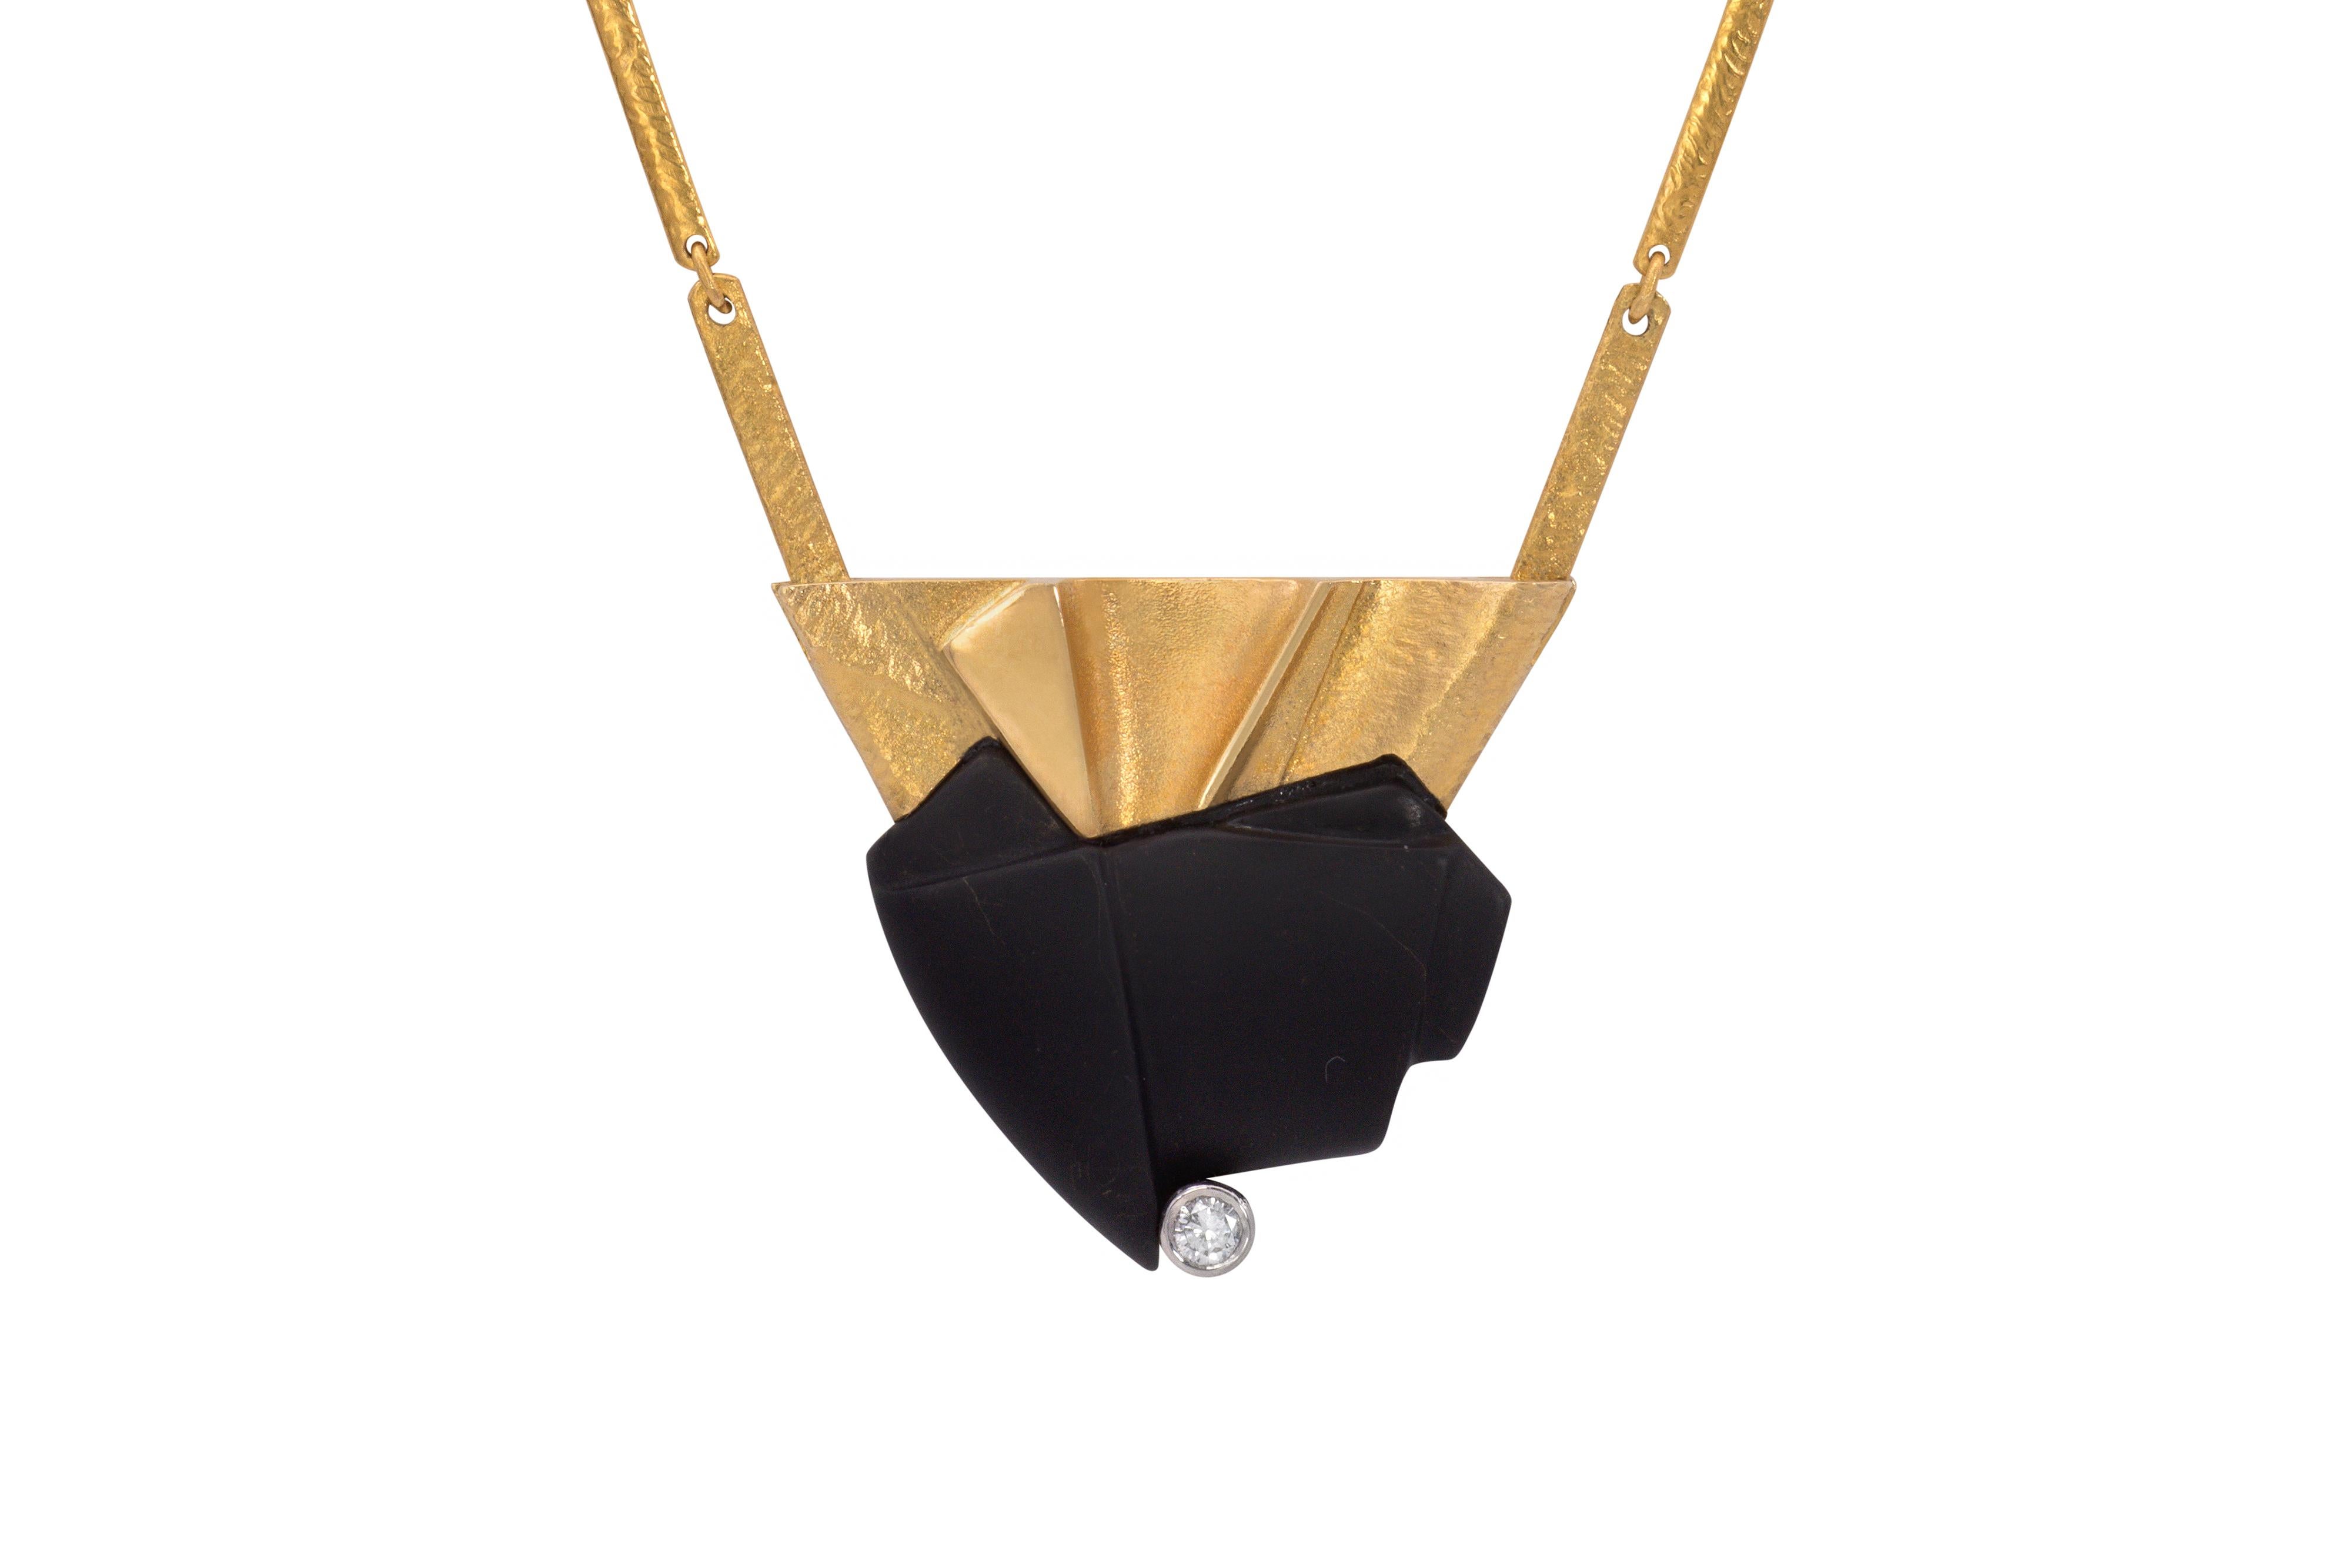 Eine Halskette aus Onyx, Diamanten und 18-karätigem Gold von Zoltan Popovitz für Lapponia 1990. Die Halskette ist mit finnischen Punzen, der Herstellermarke, 750 und der Datumsangabe für 1990 gestempelt. 

Die handstrukturierte Kette ist 16,50